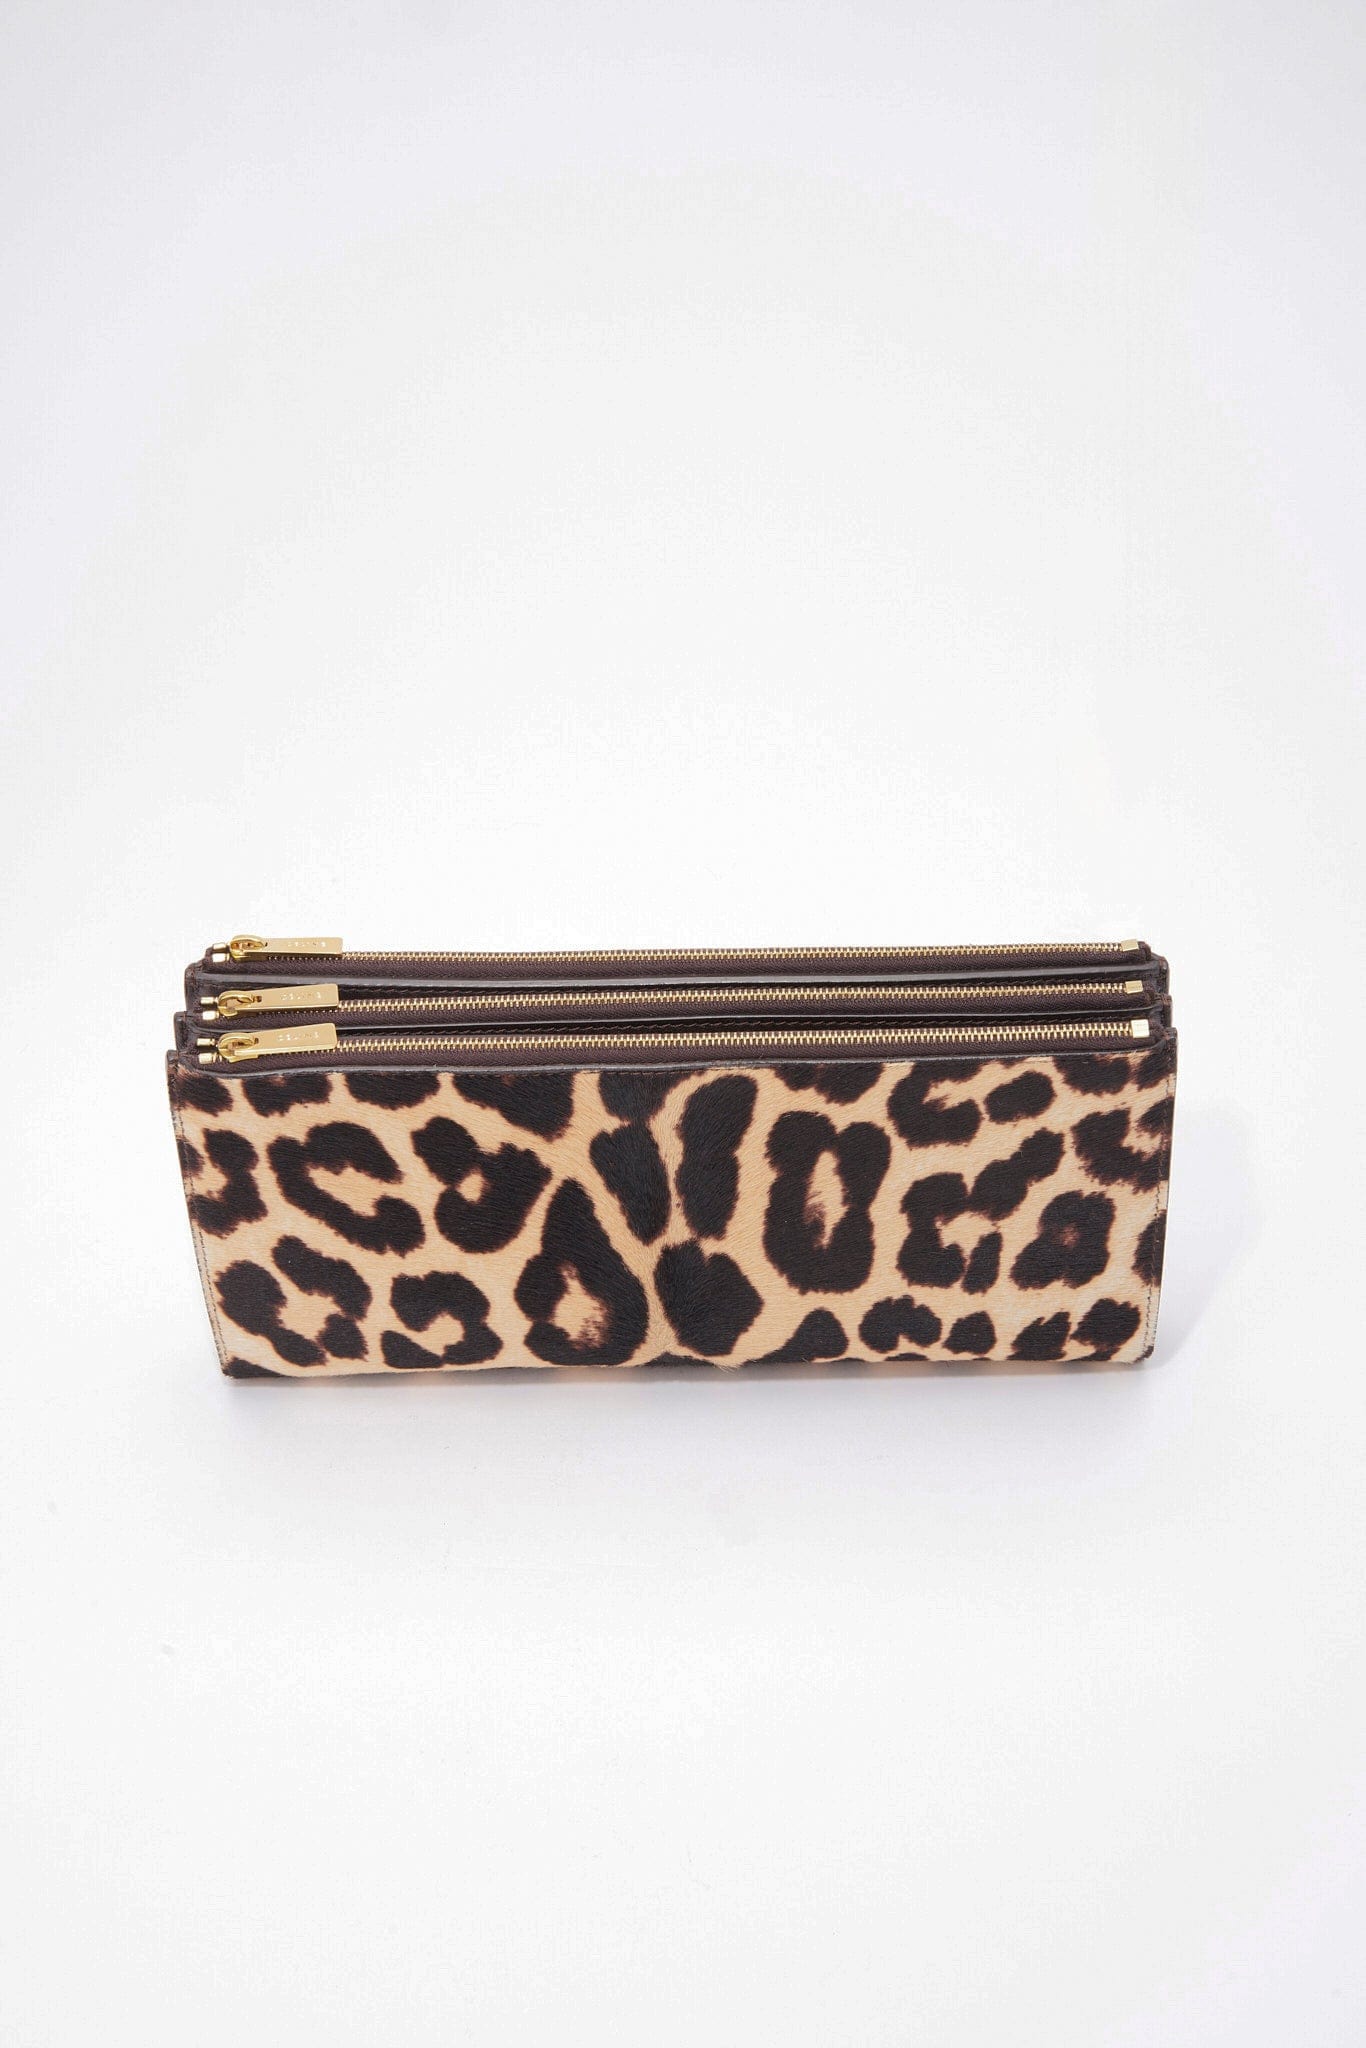 Céline Leopard Printed Calf Hair Clutch Bag